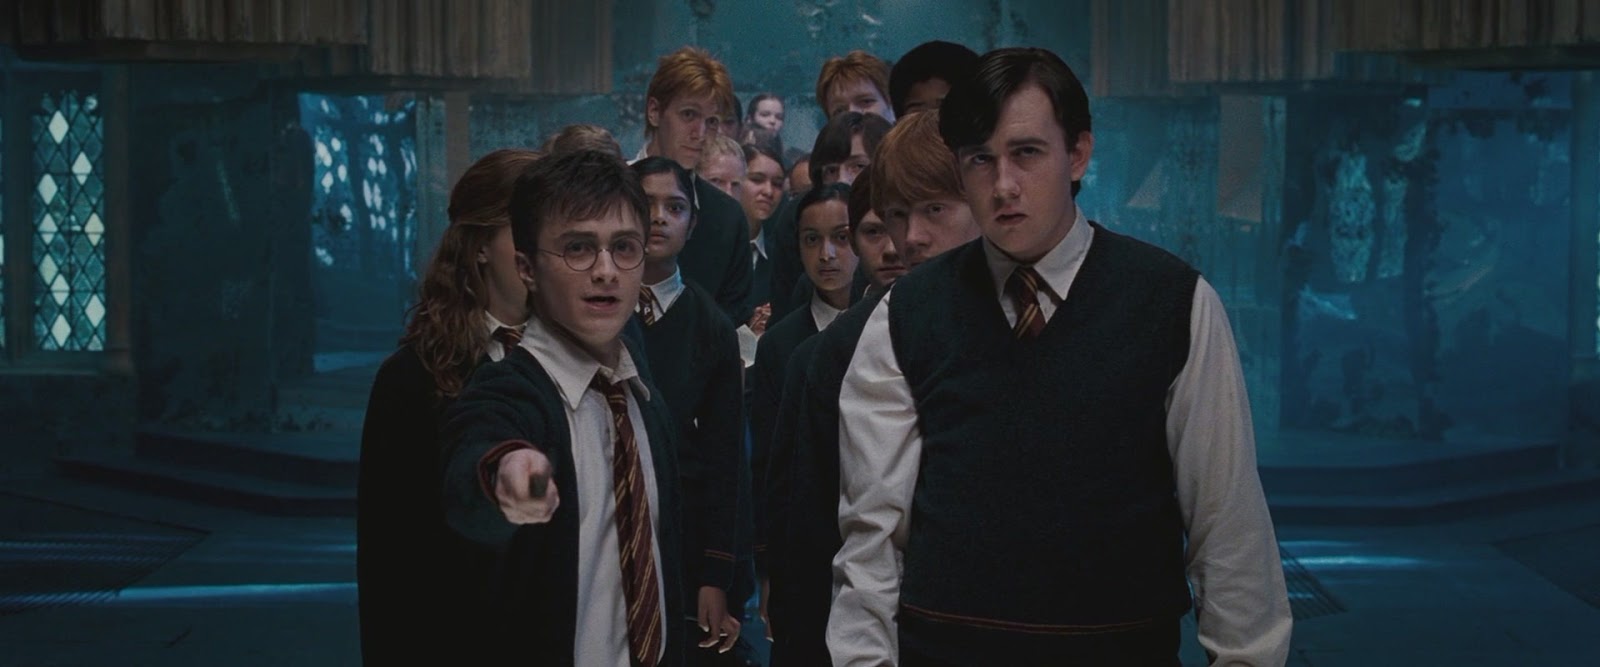 Un fan art de Harry Potter nos muestra el lado más encantador de